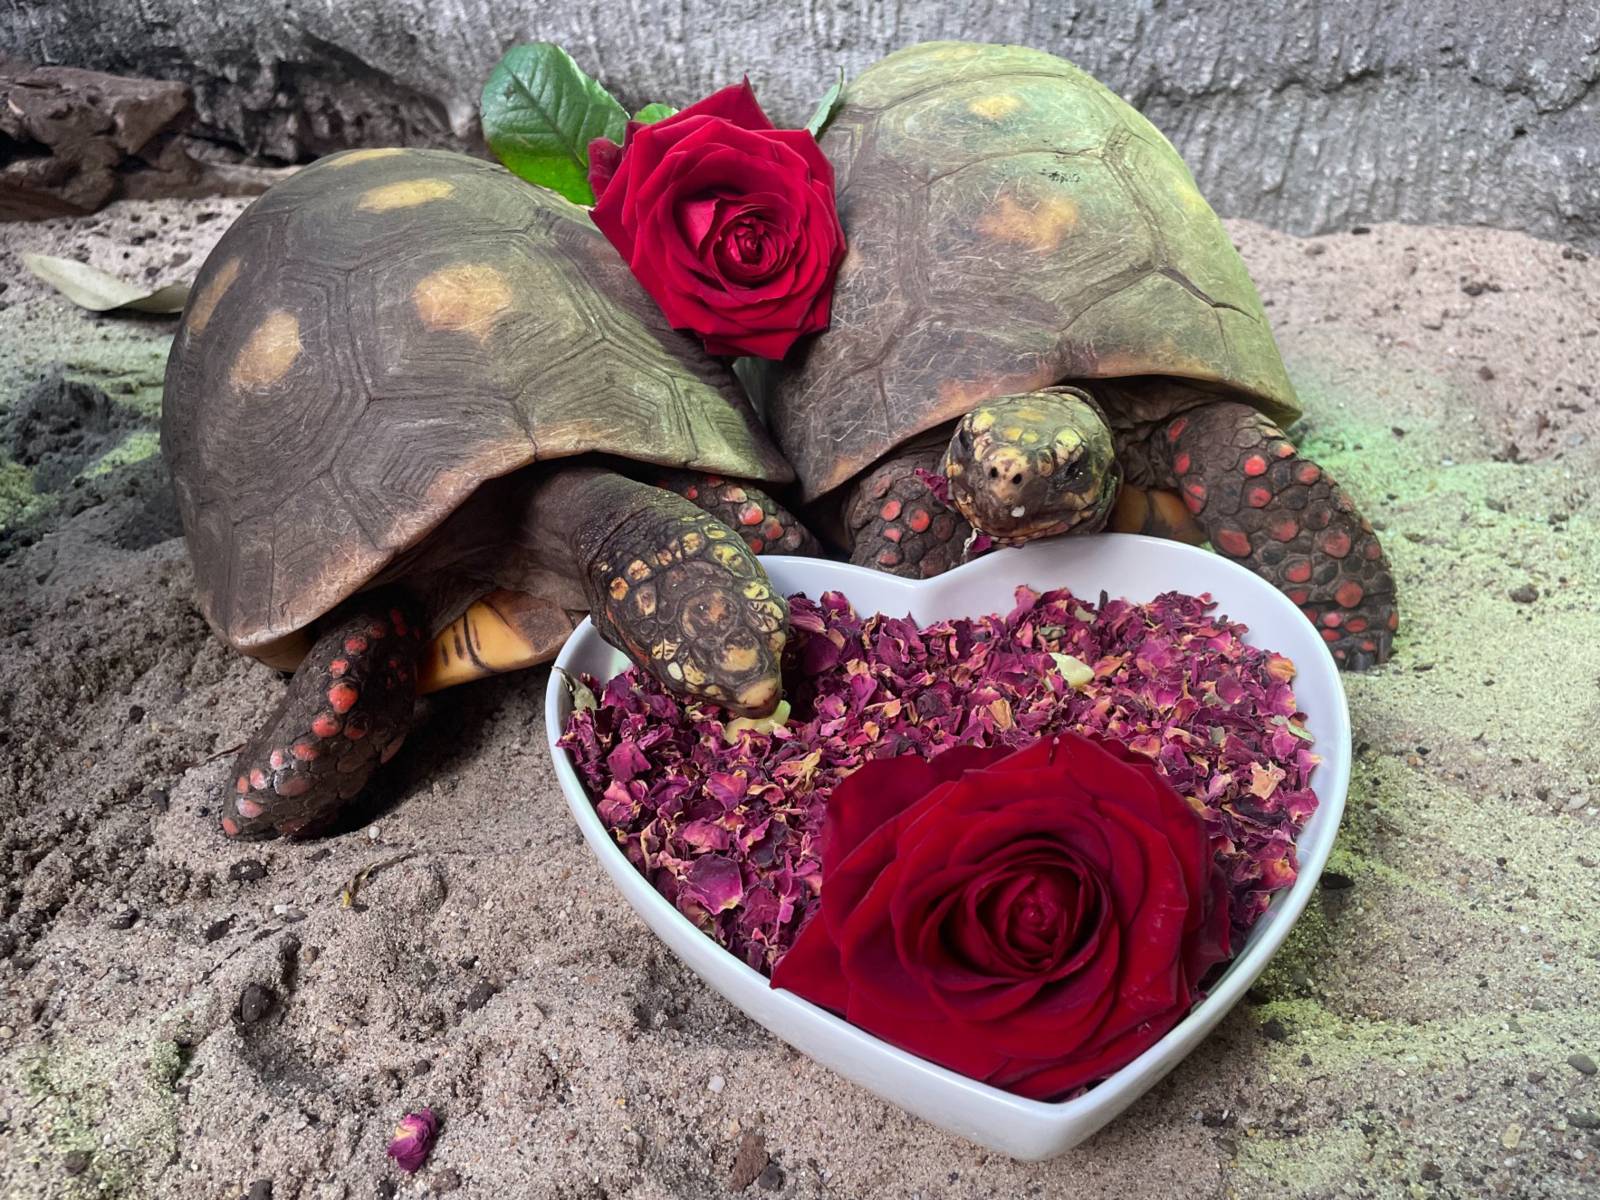 Zwei Schildkröten mit Rosenblättern als Nahrung.